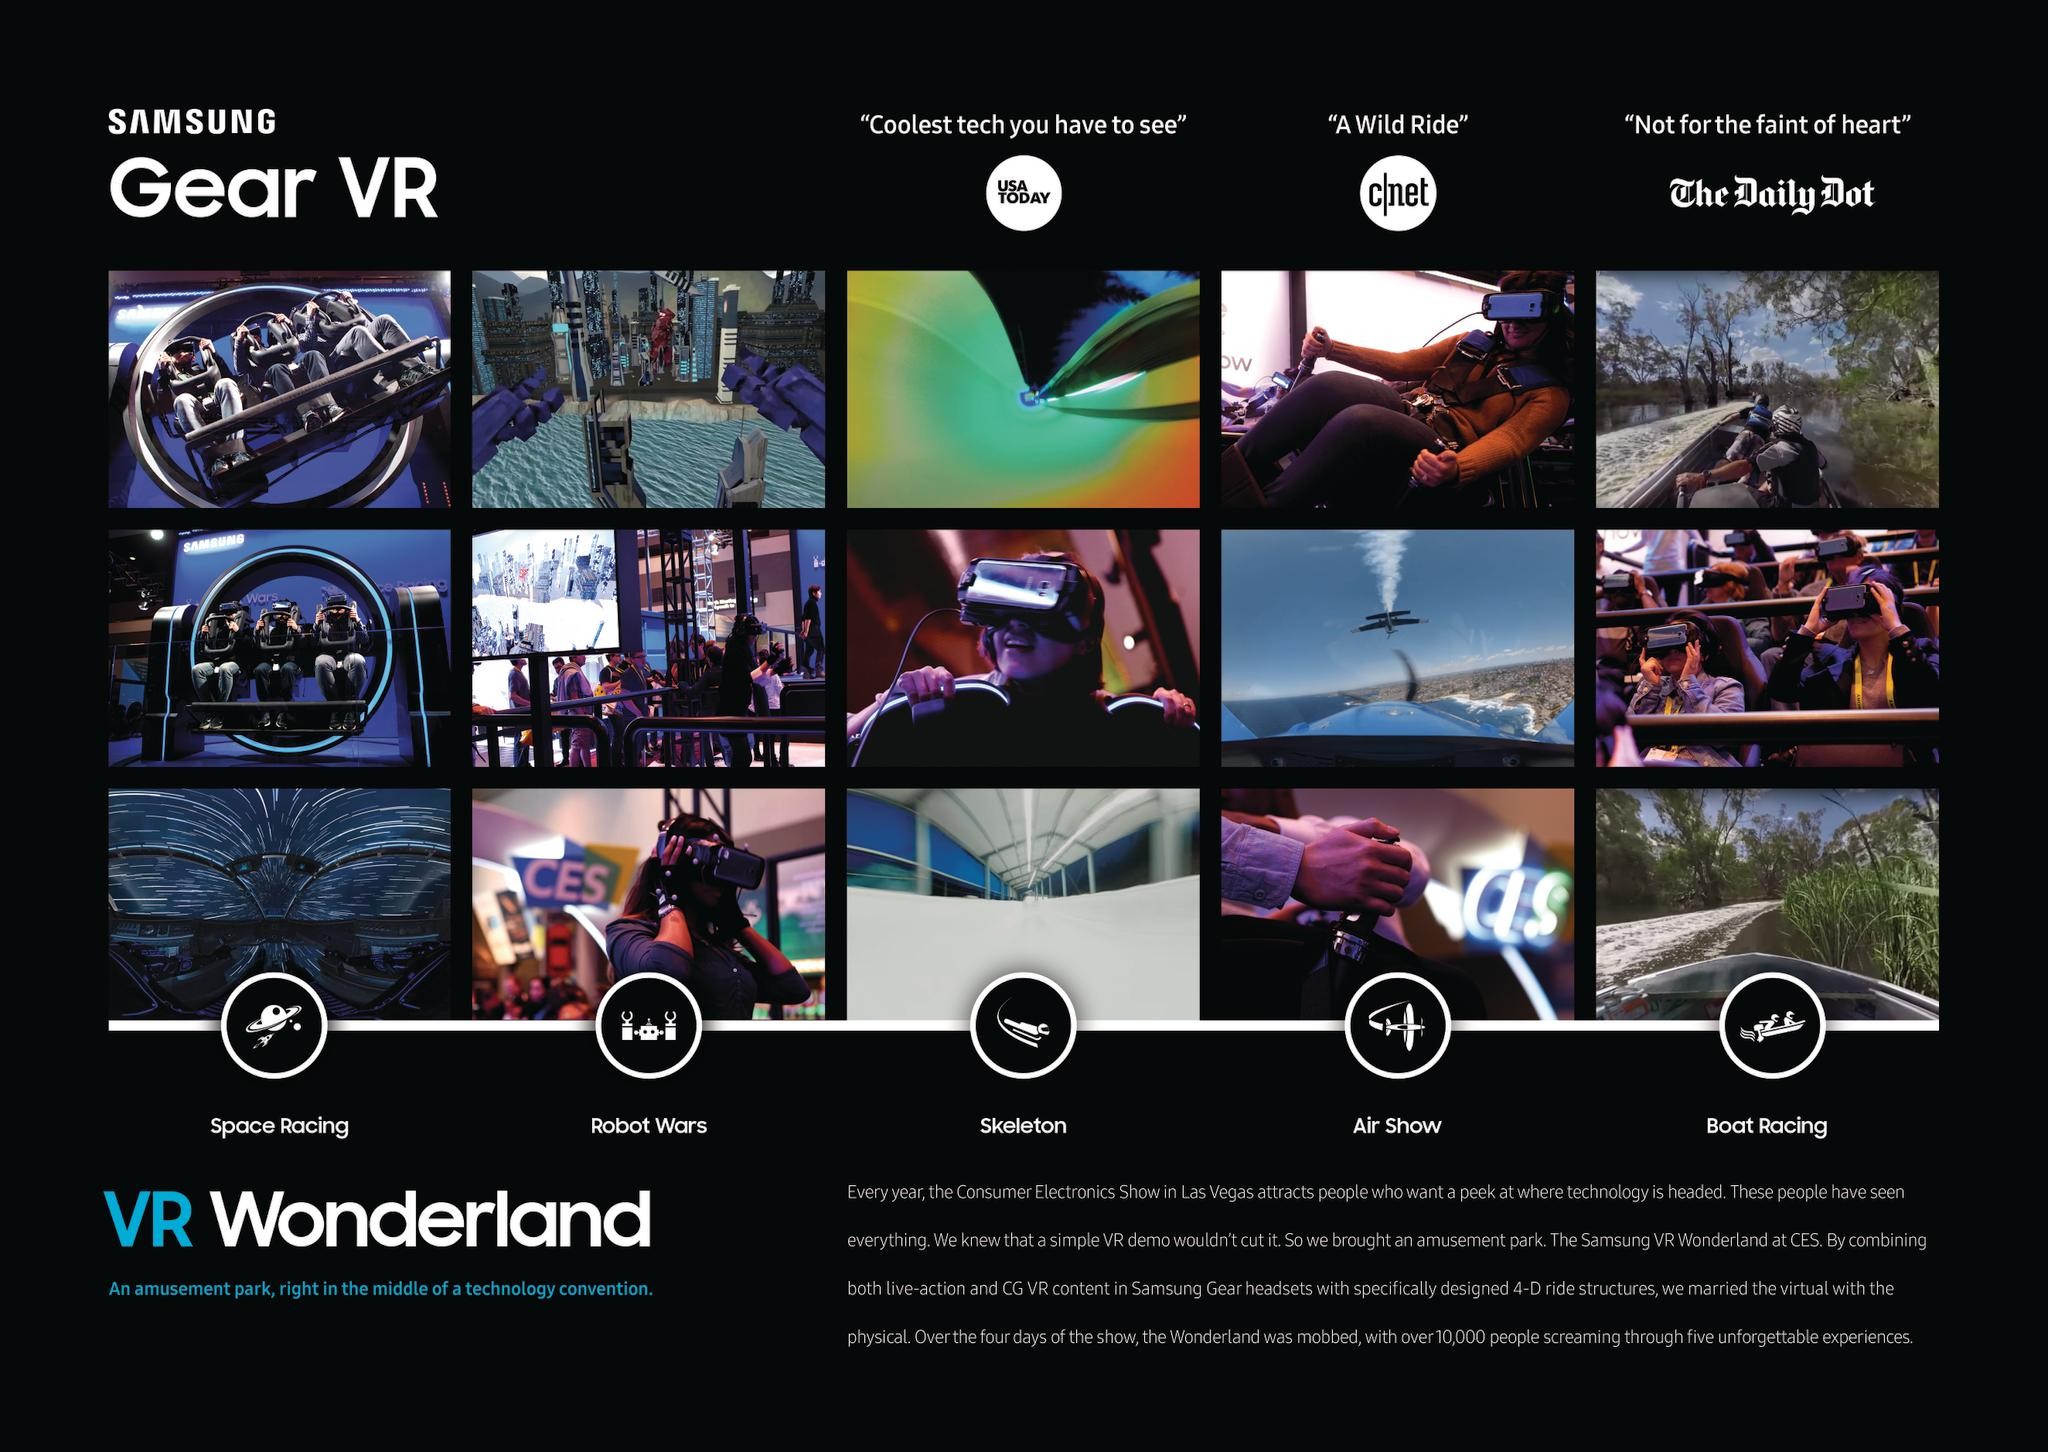 Samsung Gear VR Wonderland